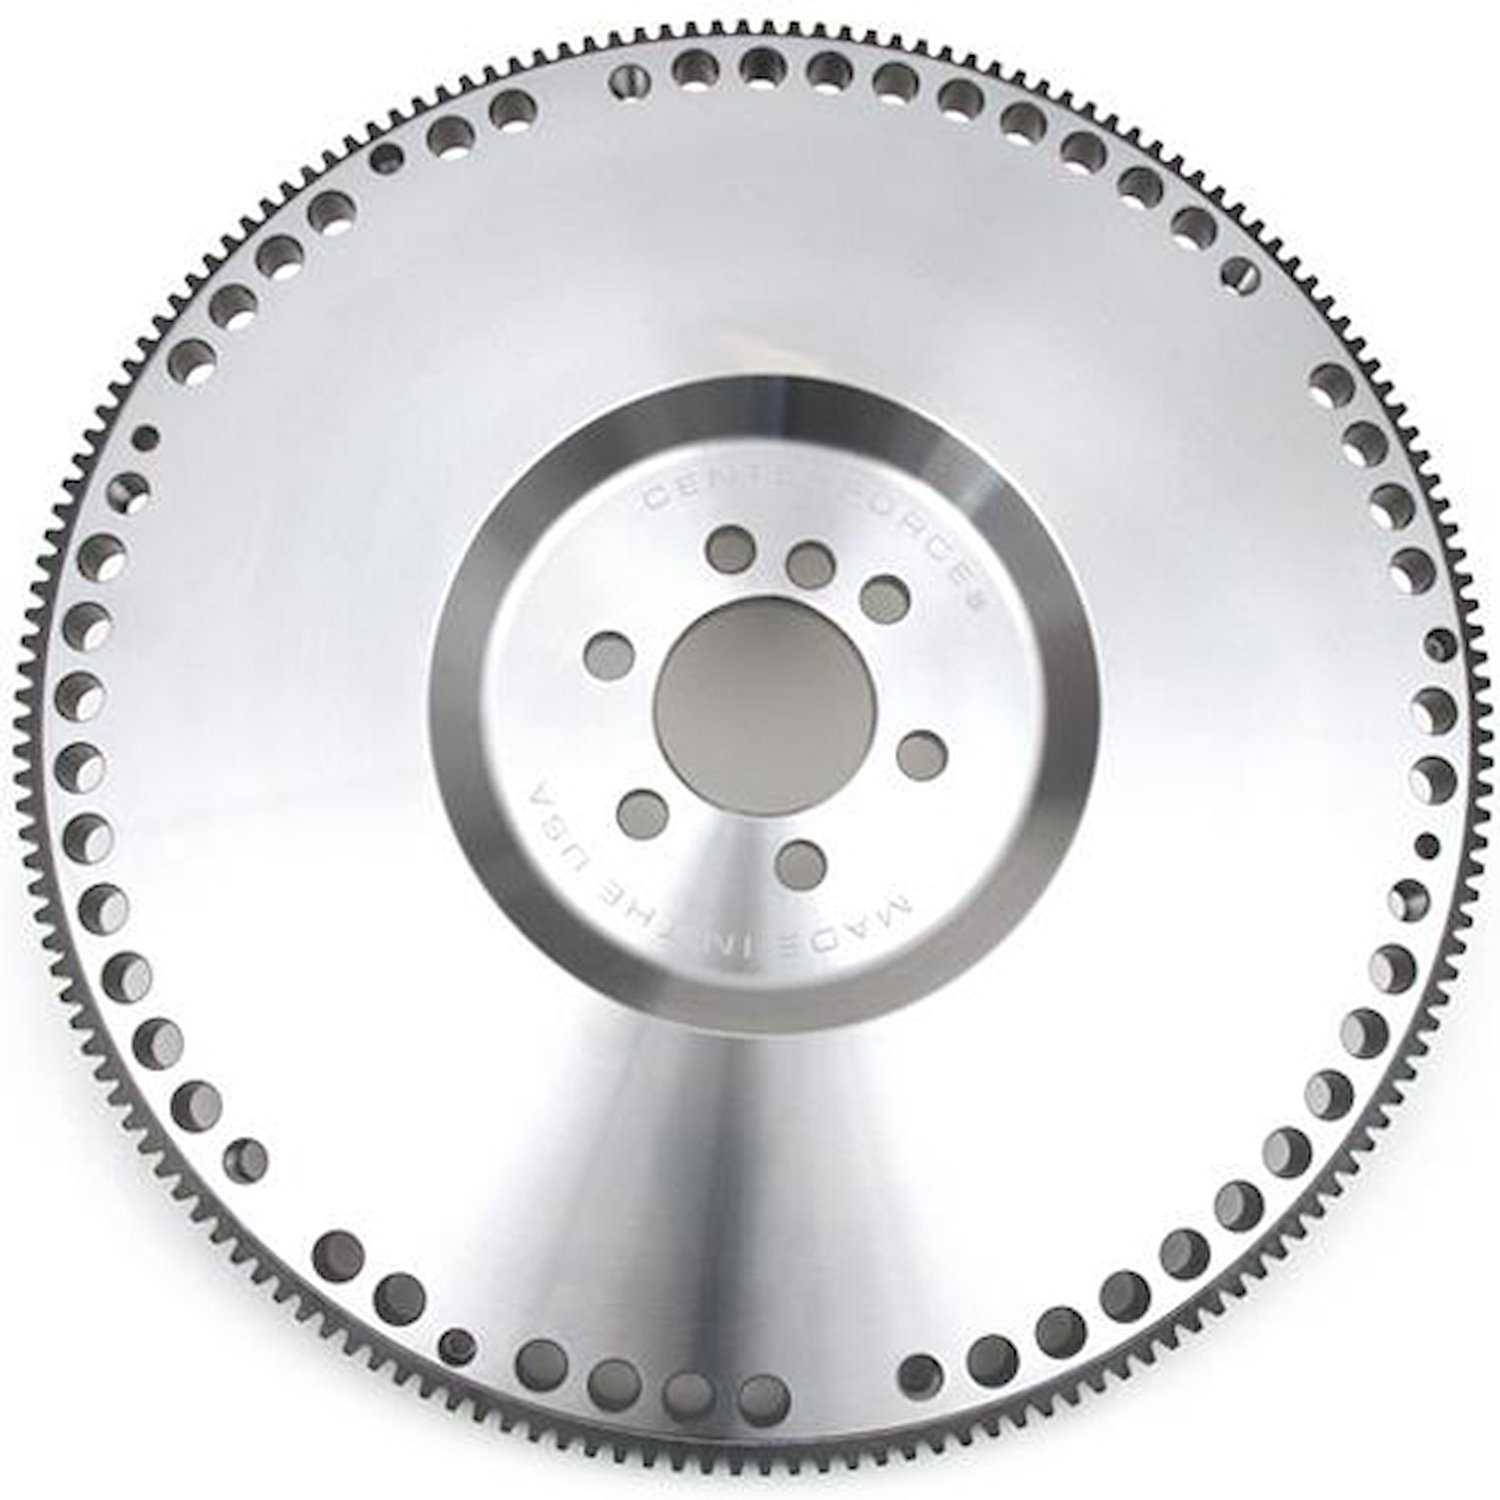 Billet Steel Low Inertia Flywheel for 1997-2015 GM LS 4.8L, 5.3L, 5.7L, 6.0L, 6.2L, 7.0L